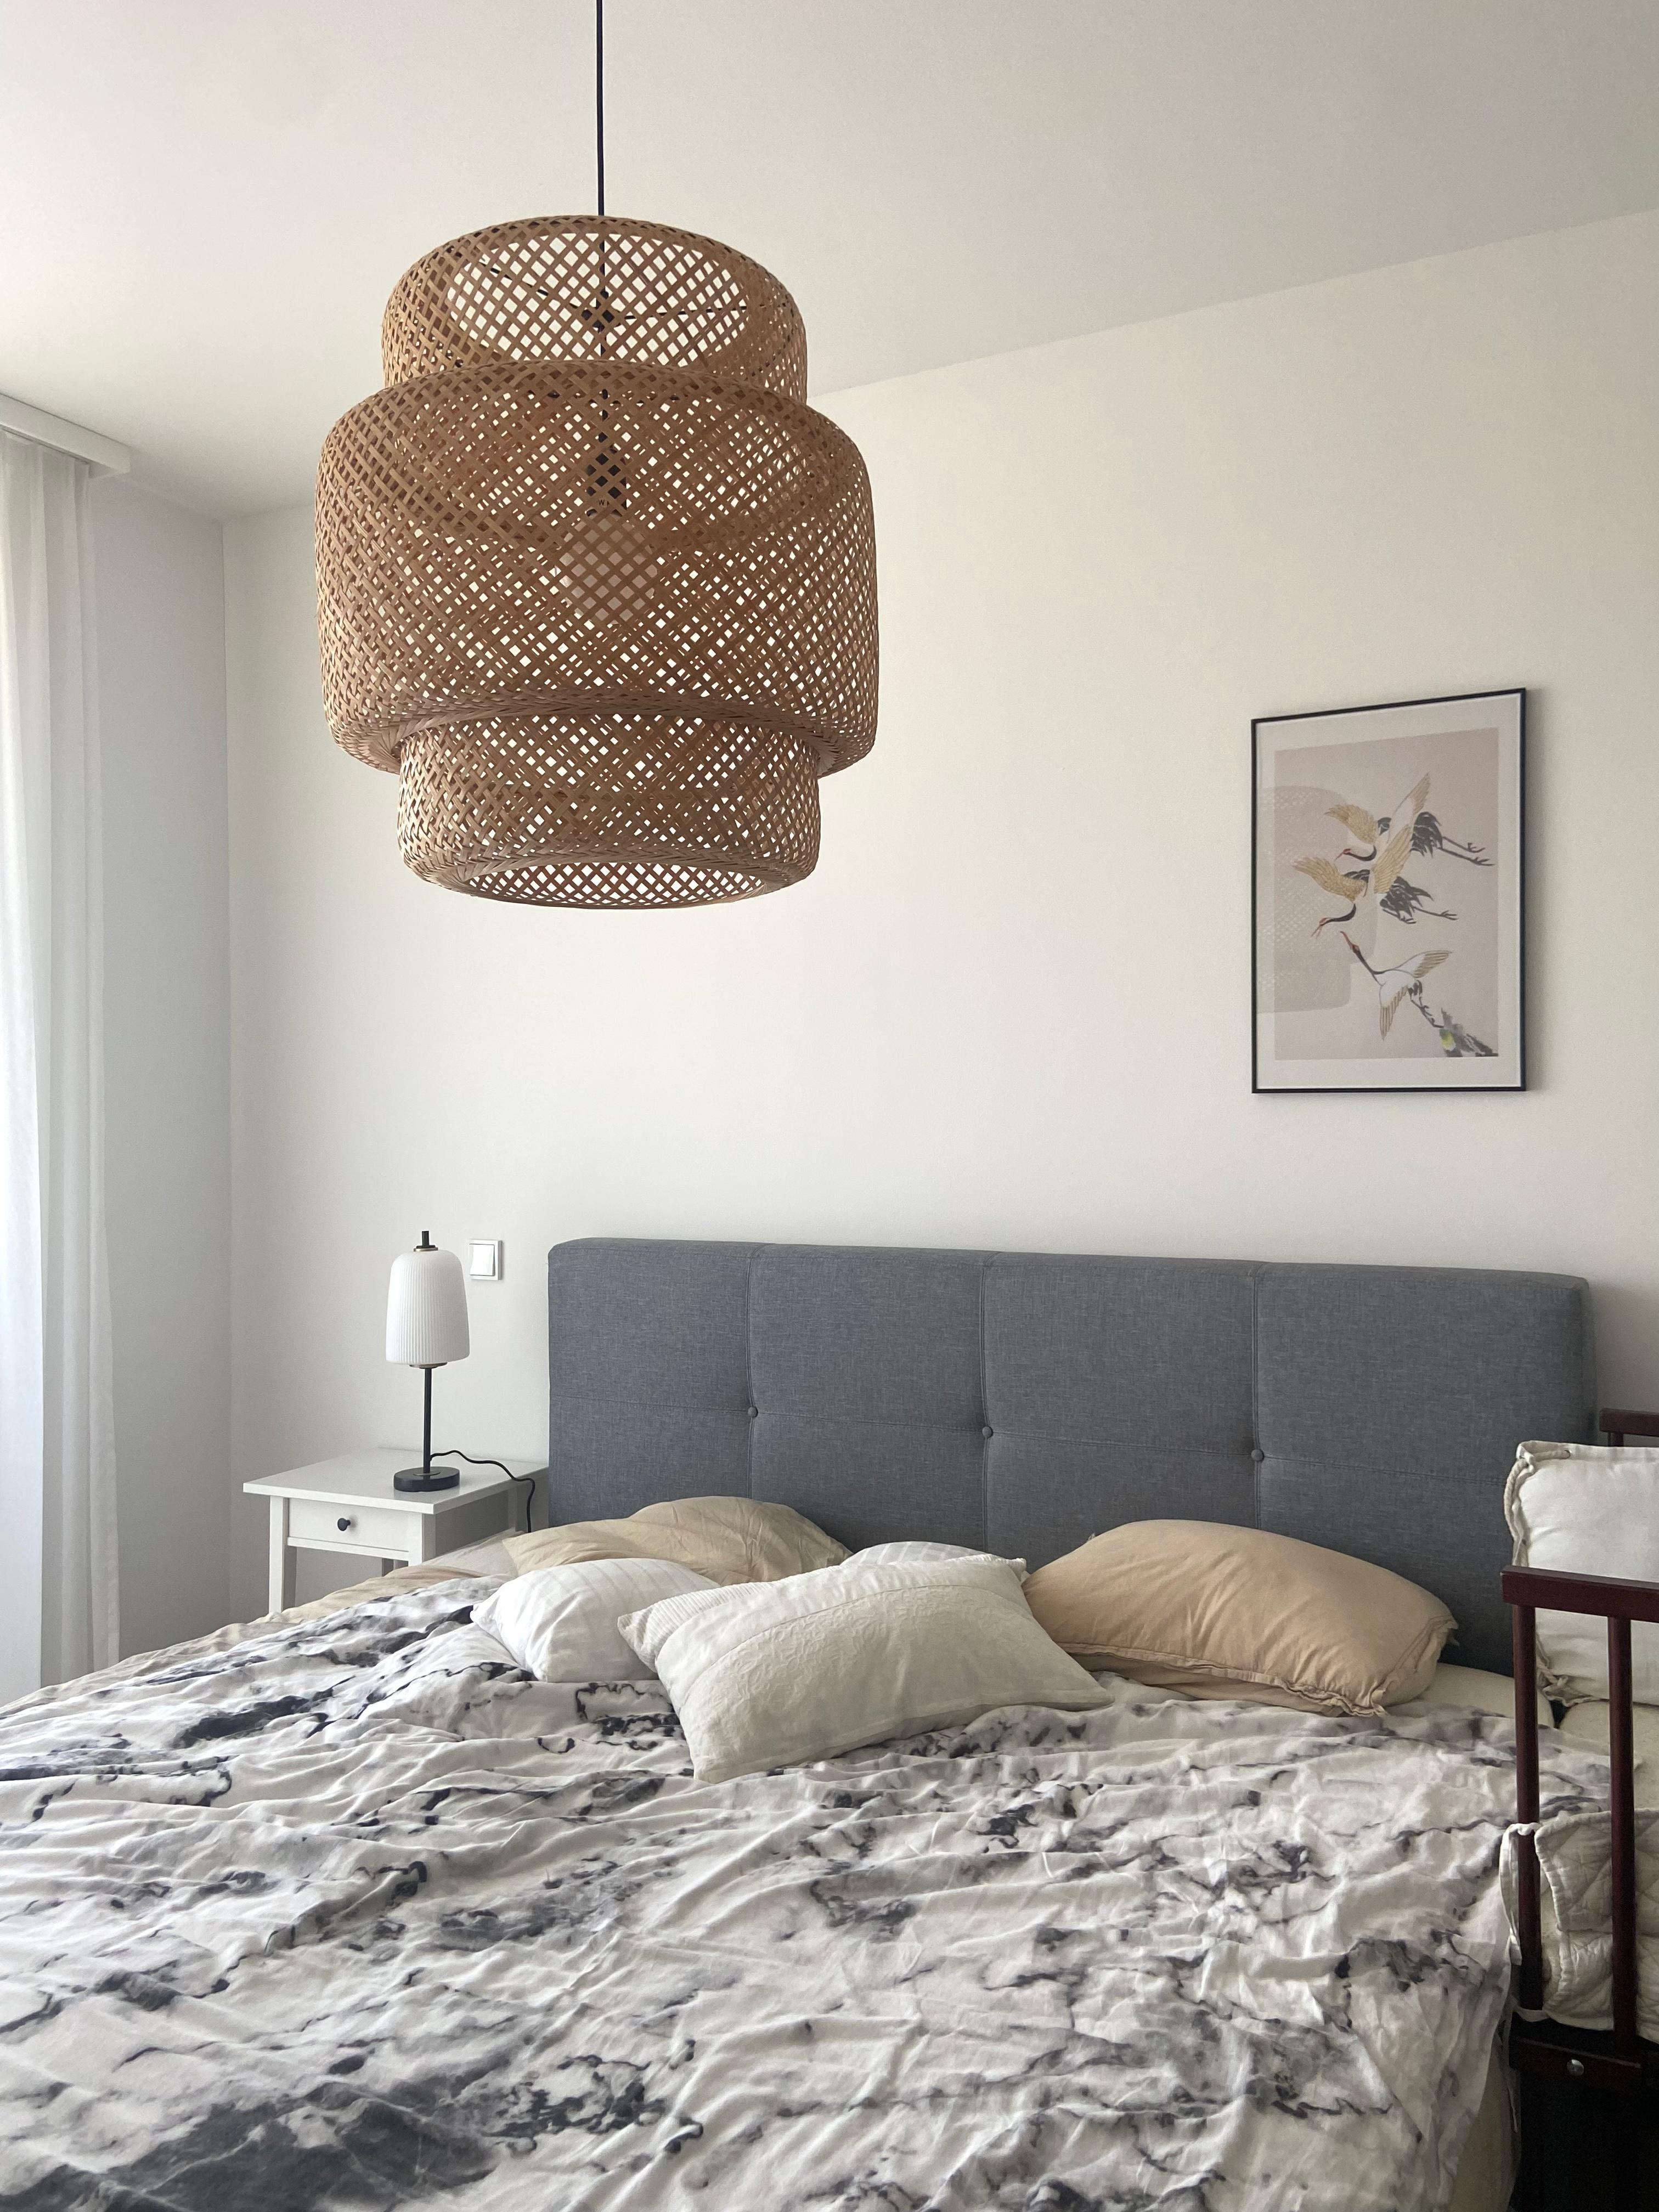 #schlafzimmer #poster #birds #lampe #boxspringbett #minimalistisch 